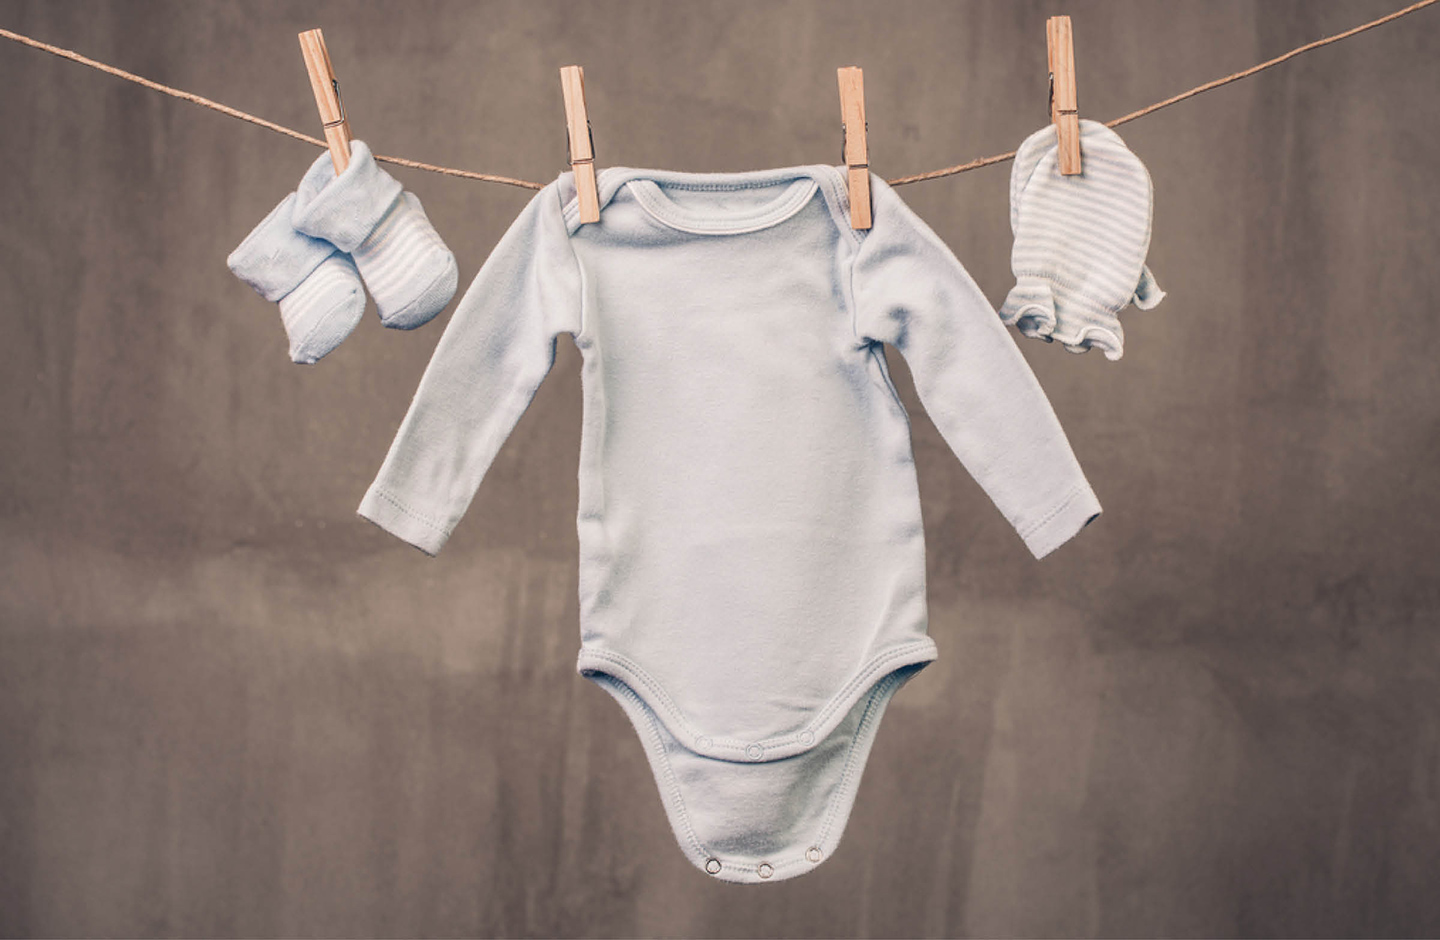 Wäscheleine mit Babykleidung